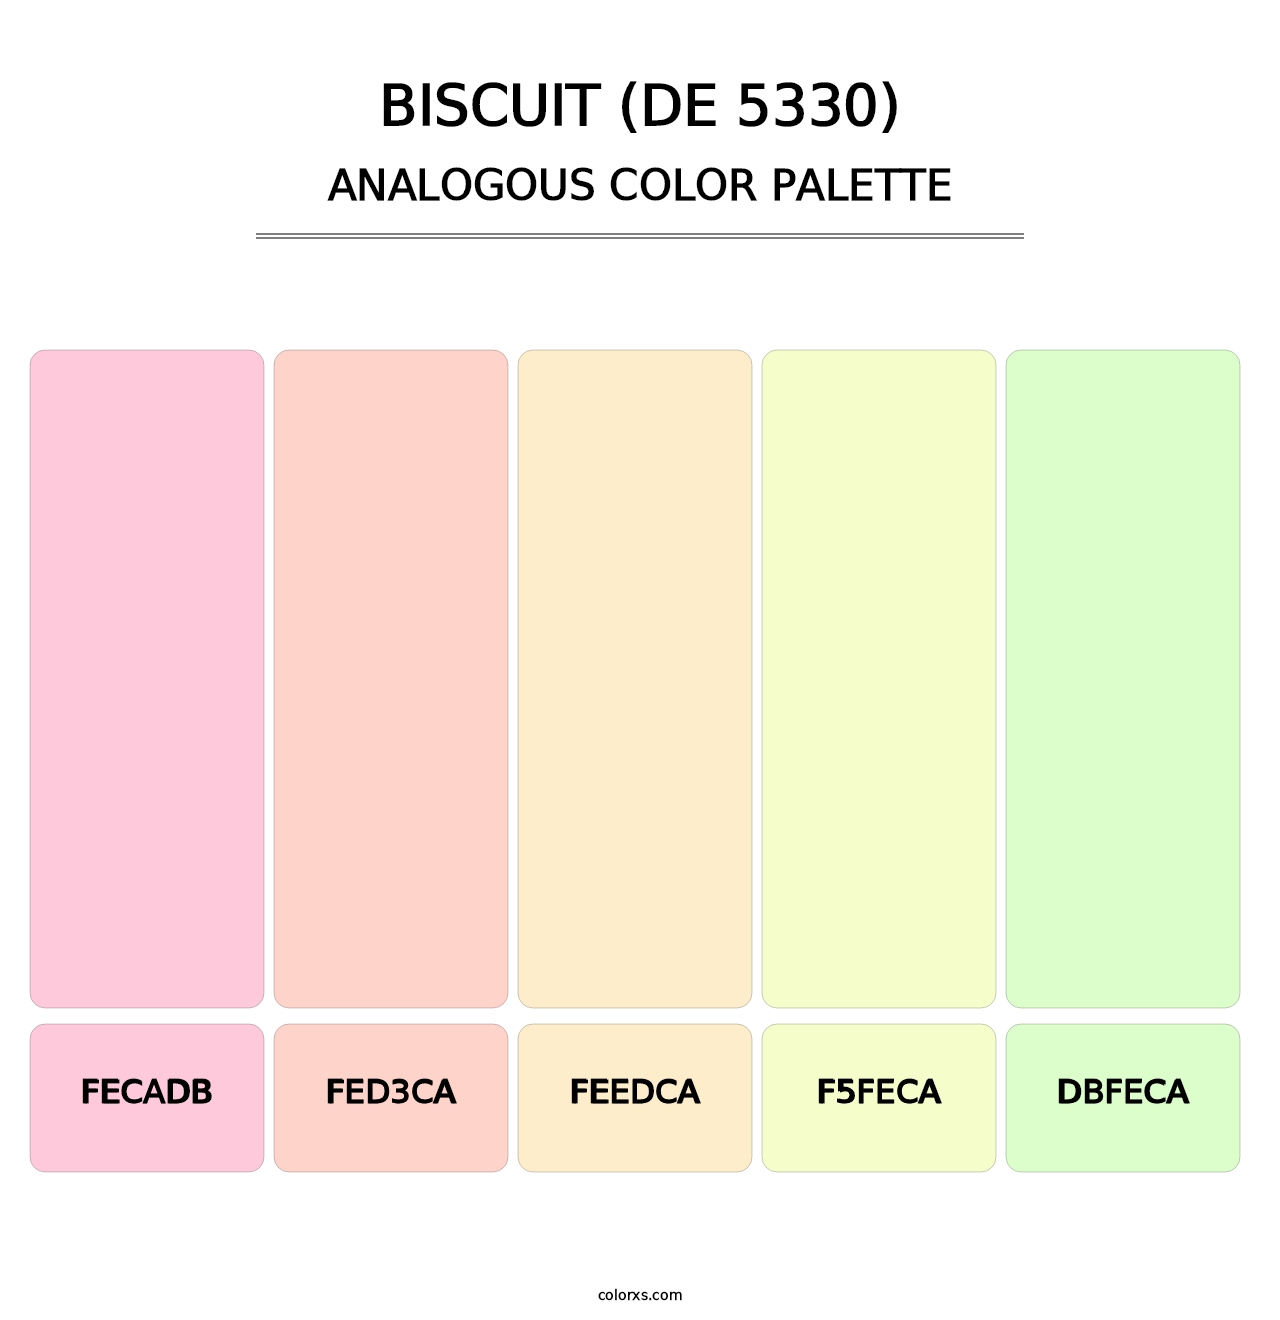 Biscuit (DE 5330) - Analogous Color Palette